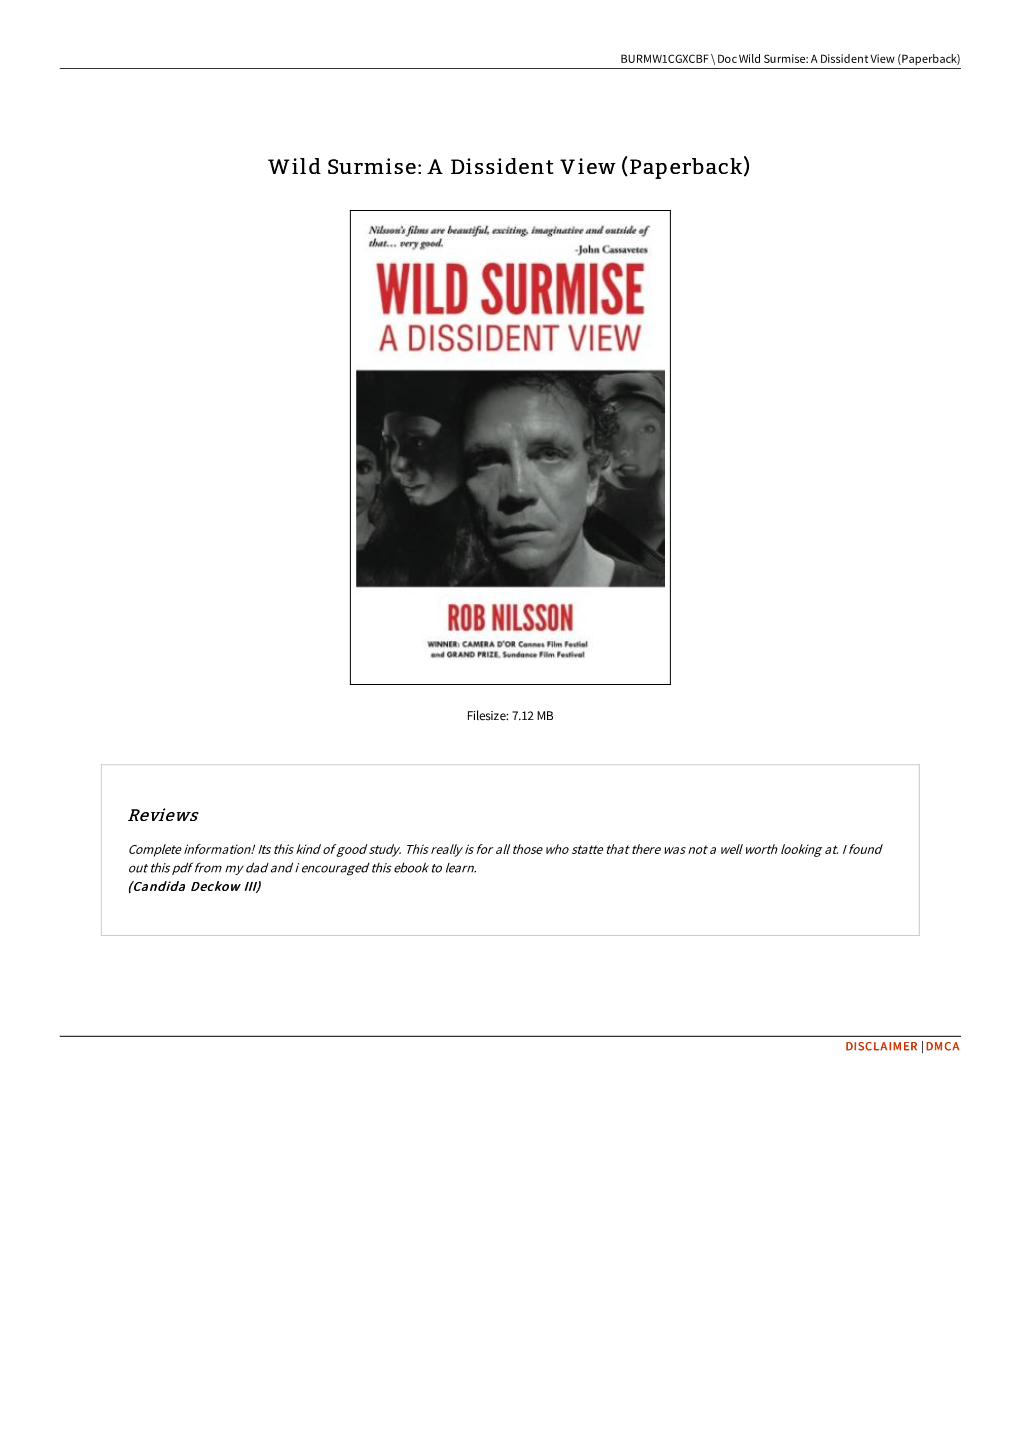 Wild Surmise: a Dissident View (Paperback)